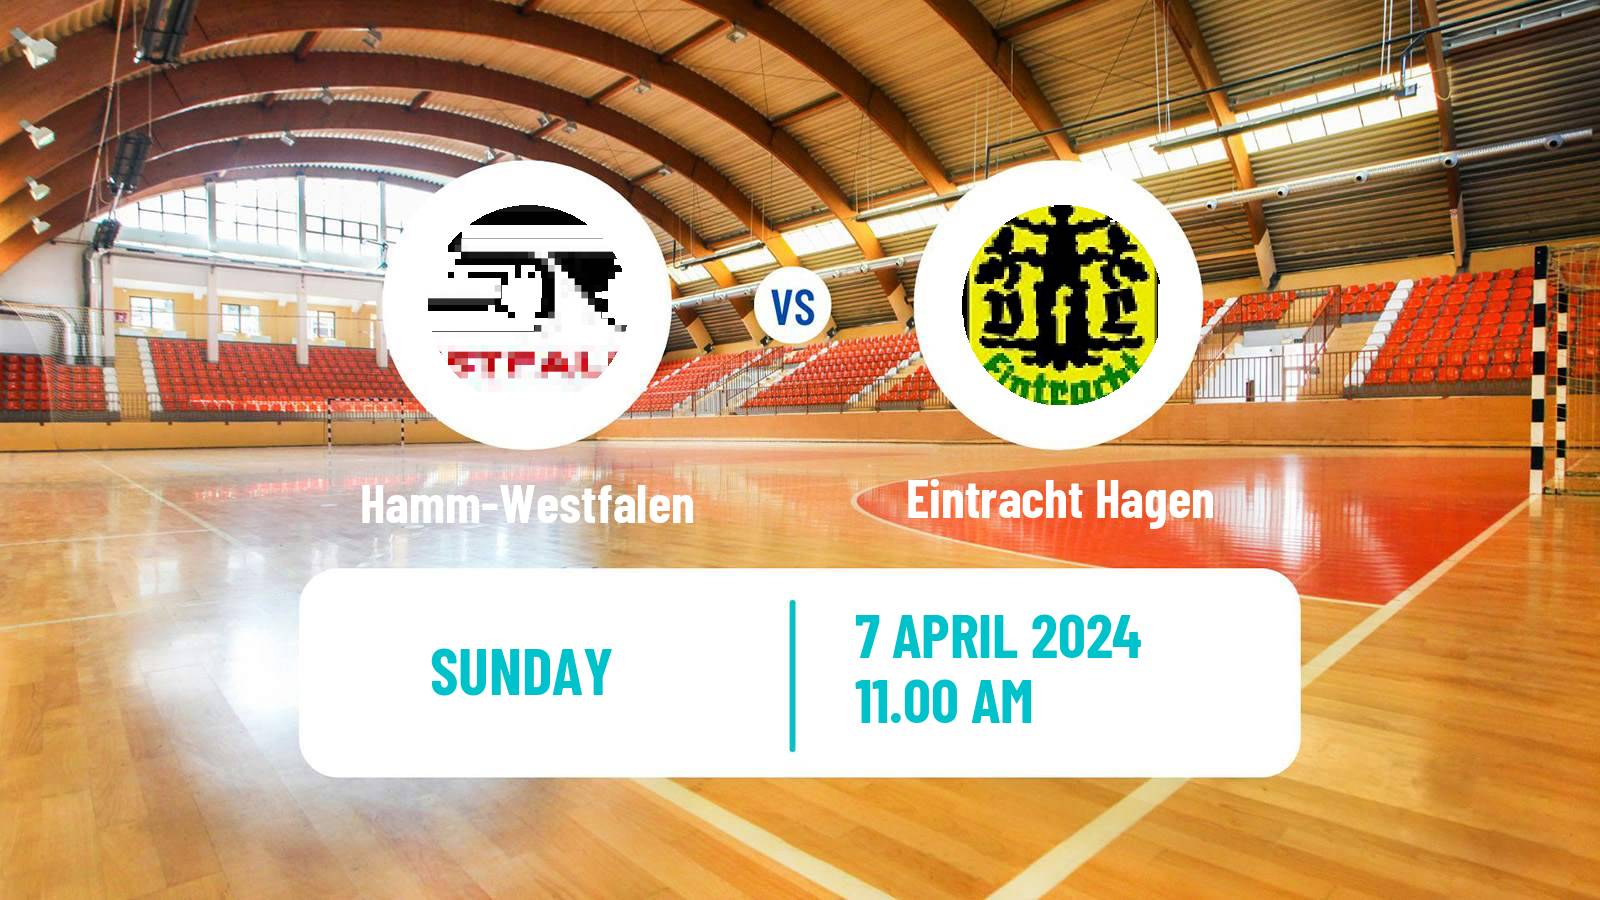 Handball German 2 Bundesliga Handball Hamm-Westfalen - Eintracht Hagen